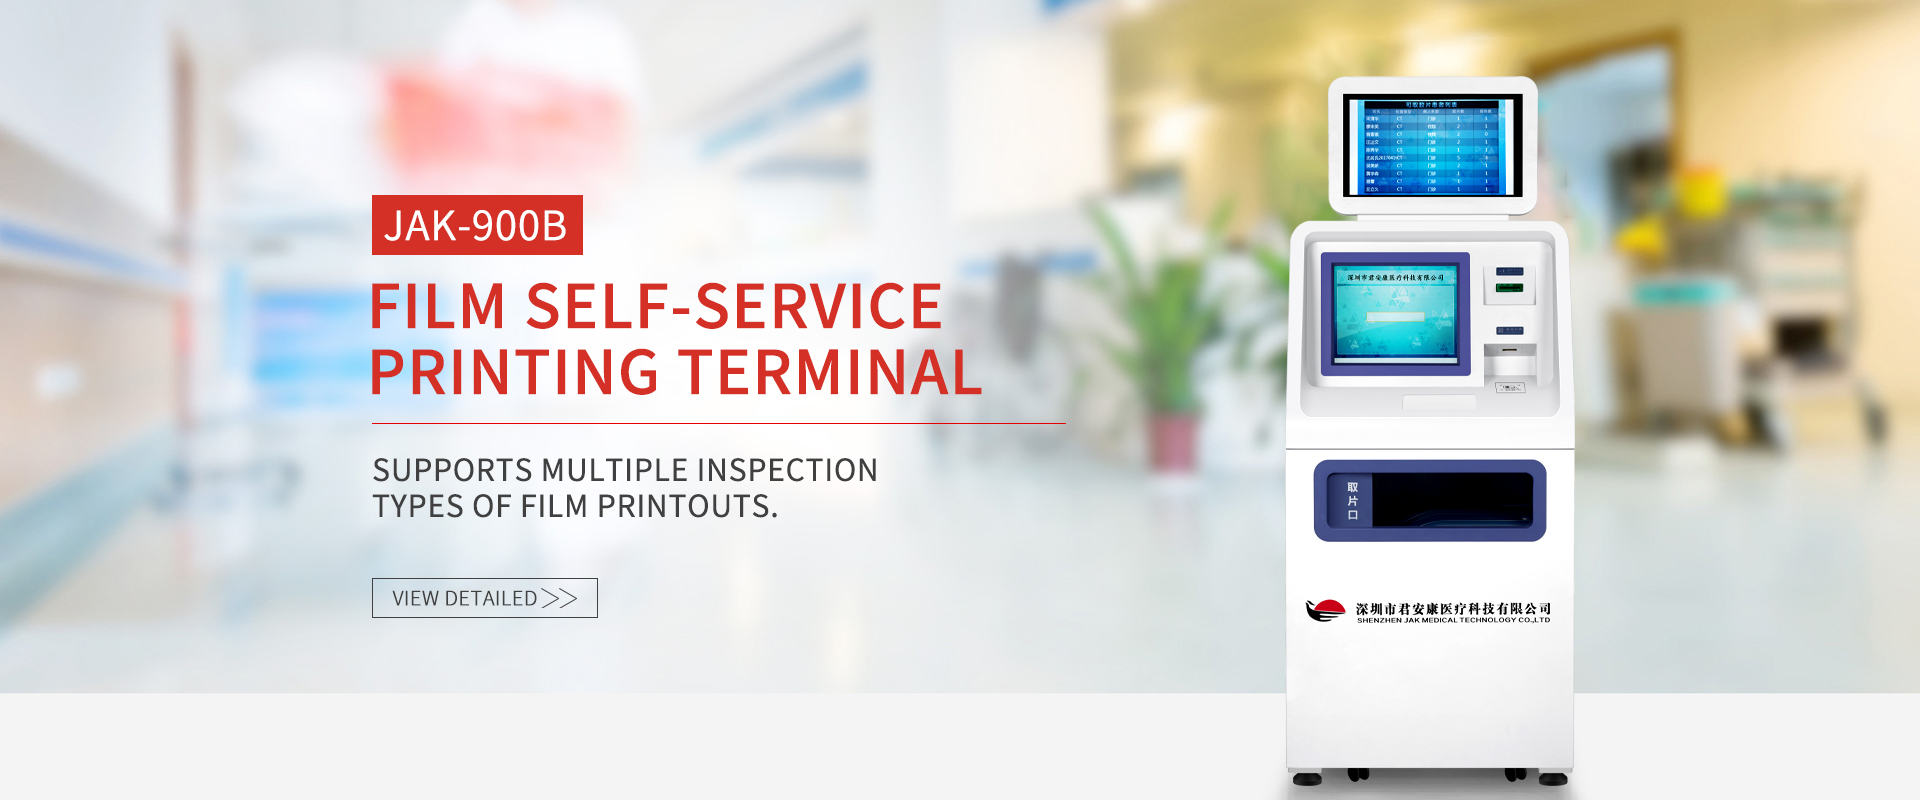 Terminal fanaovana pirinty self-service